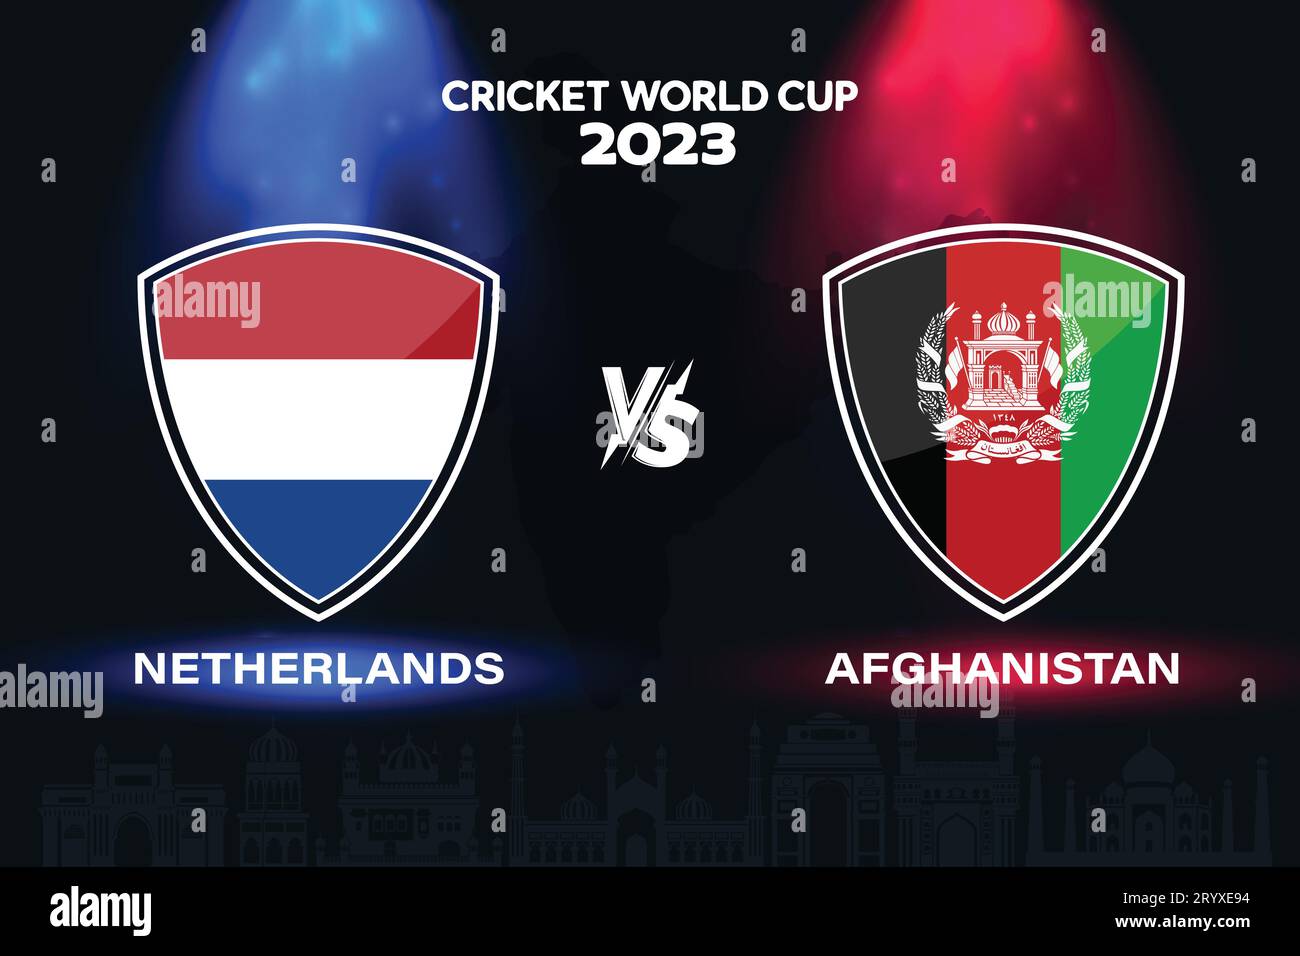 Netherlands vs Afghanistan international cricket flag badge design on Indian skyline background for the final World Cup 2023. EPS design Stock Vector